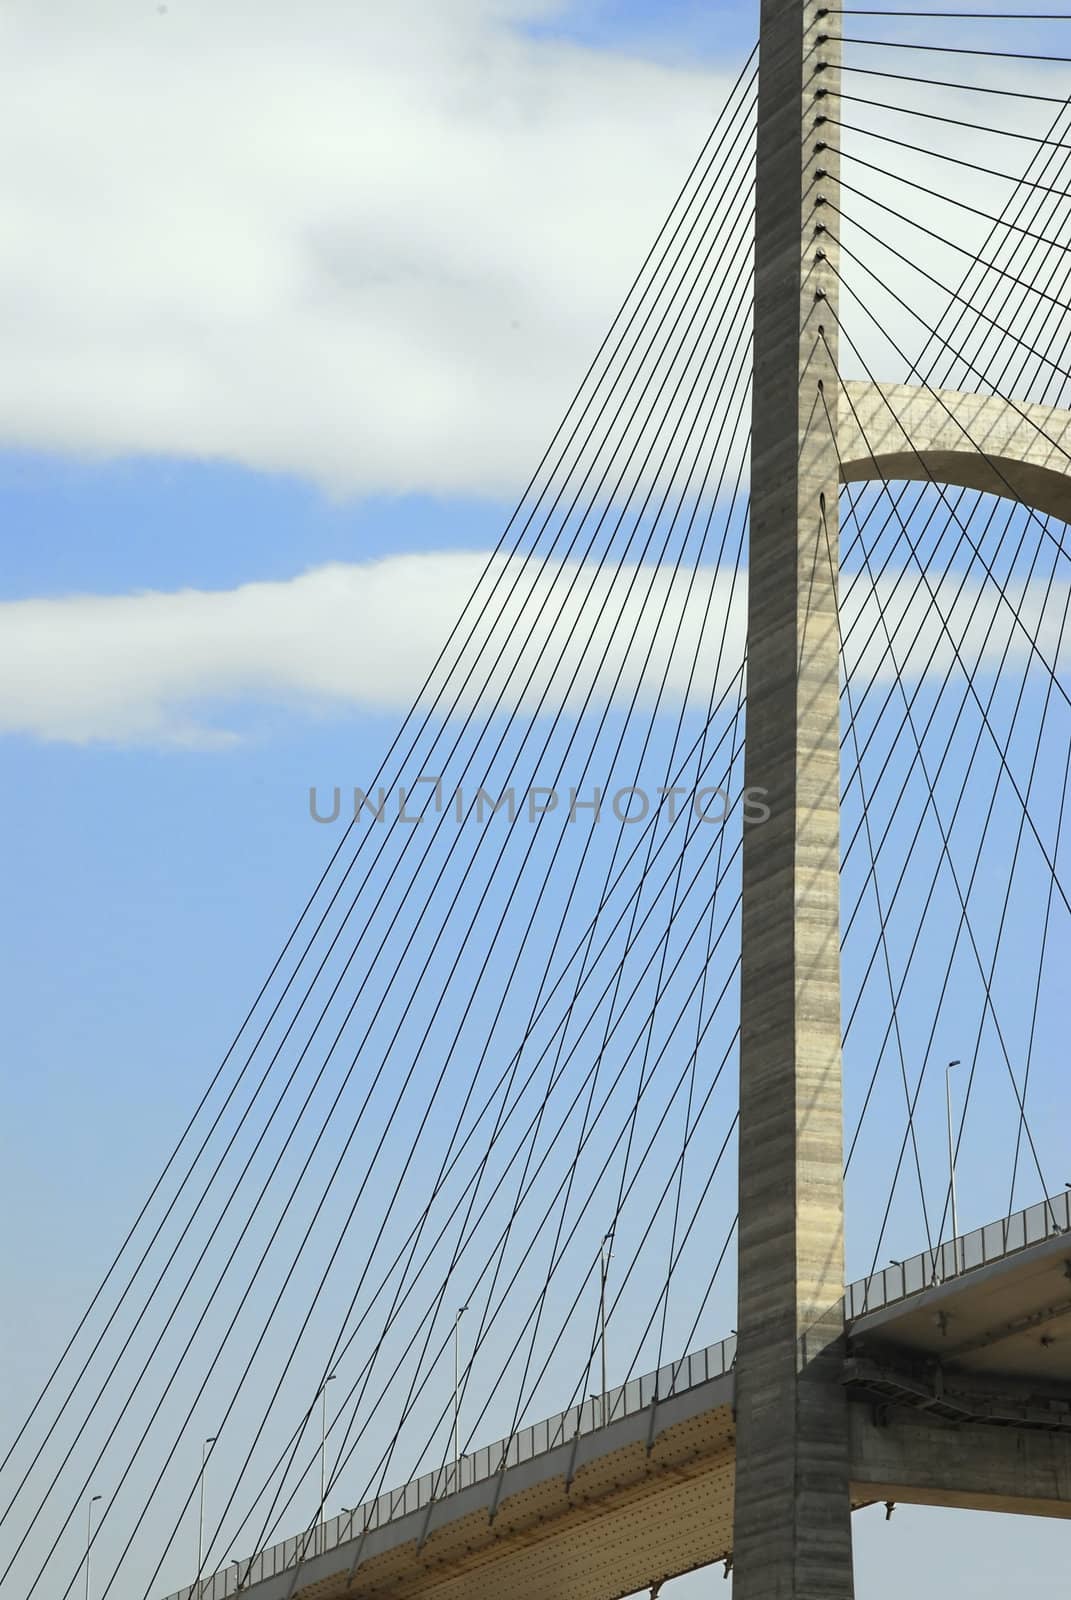 Suspension Bridge by npologuy